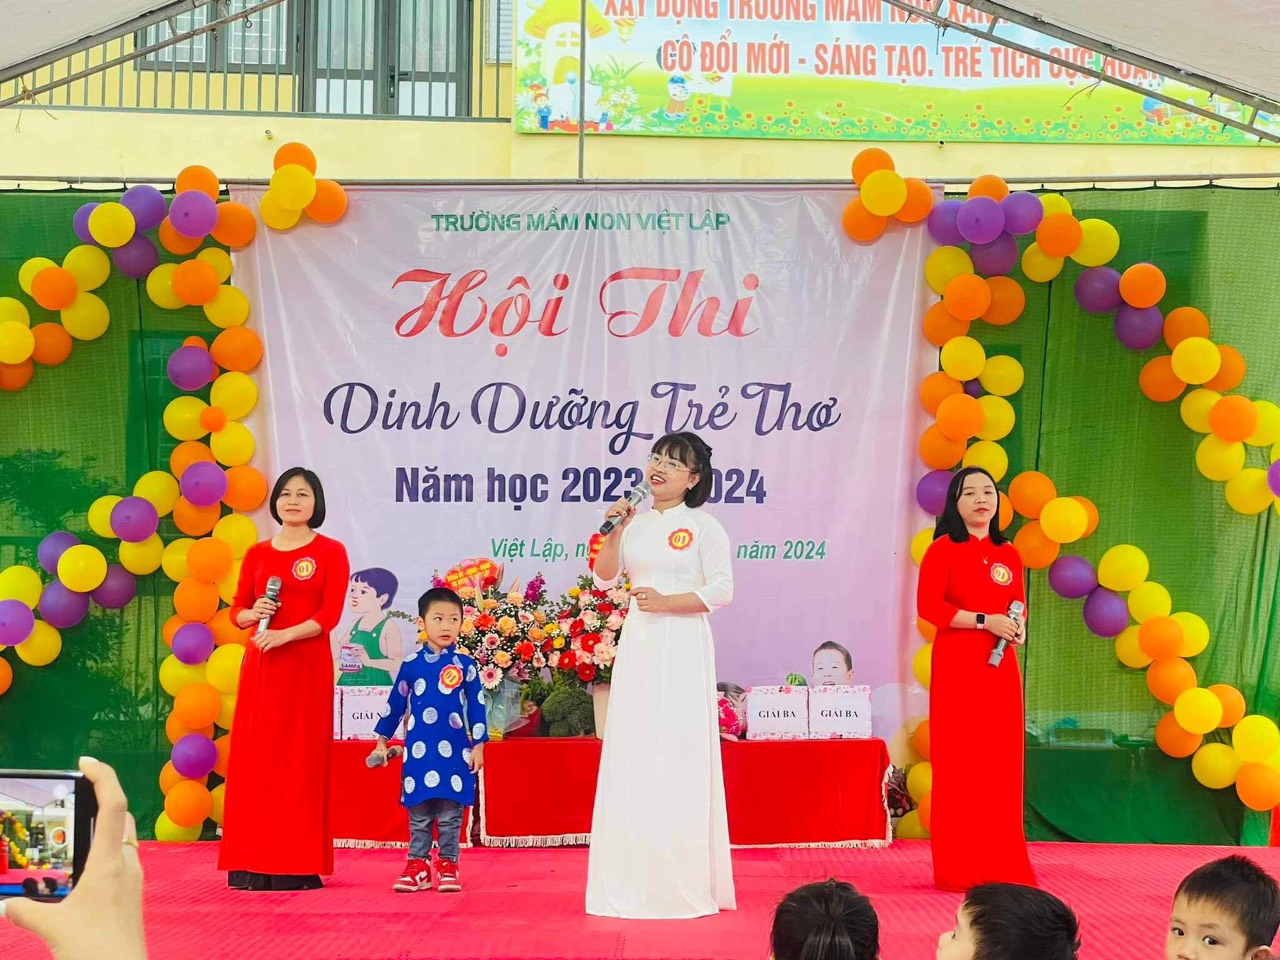 Tân Yên Bắc Giang: Trường Mầm non Việt Lập tổ chức thành công hội thi “Dinh dưỡng trẻ thơ” năm học 2023-2024